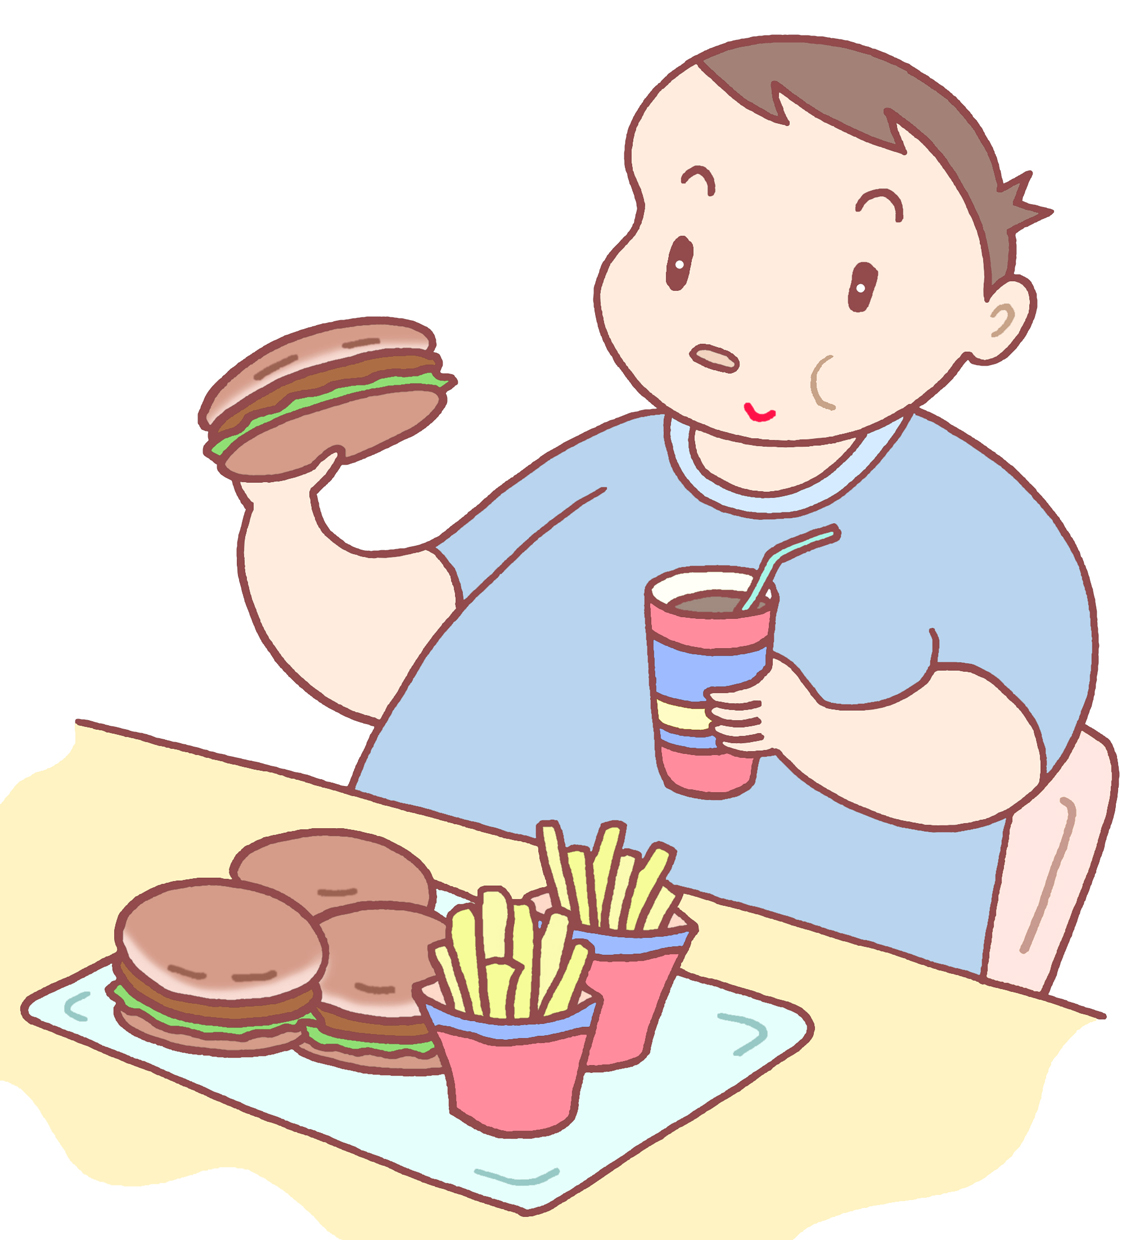 過食症,食べ過ぎ,生活習慣病,カロリー過剰摂取,カロリー過多,栄養過多,生活習慣病予備軍,メタボリックシンドローム,カロリー大量摂取